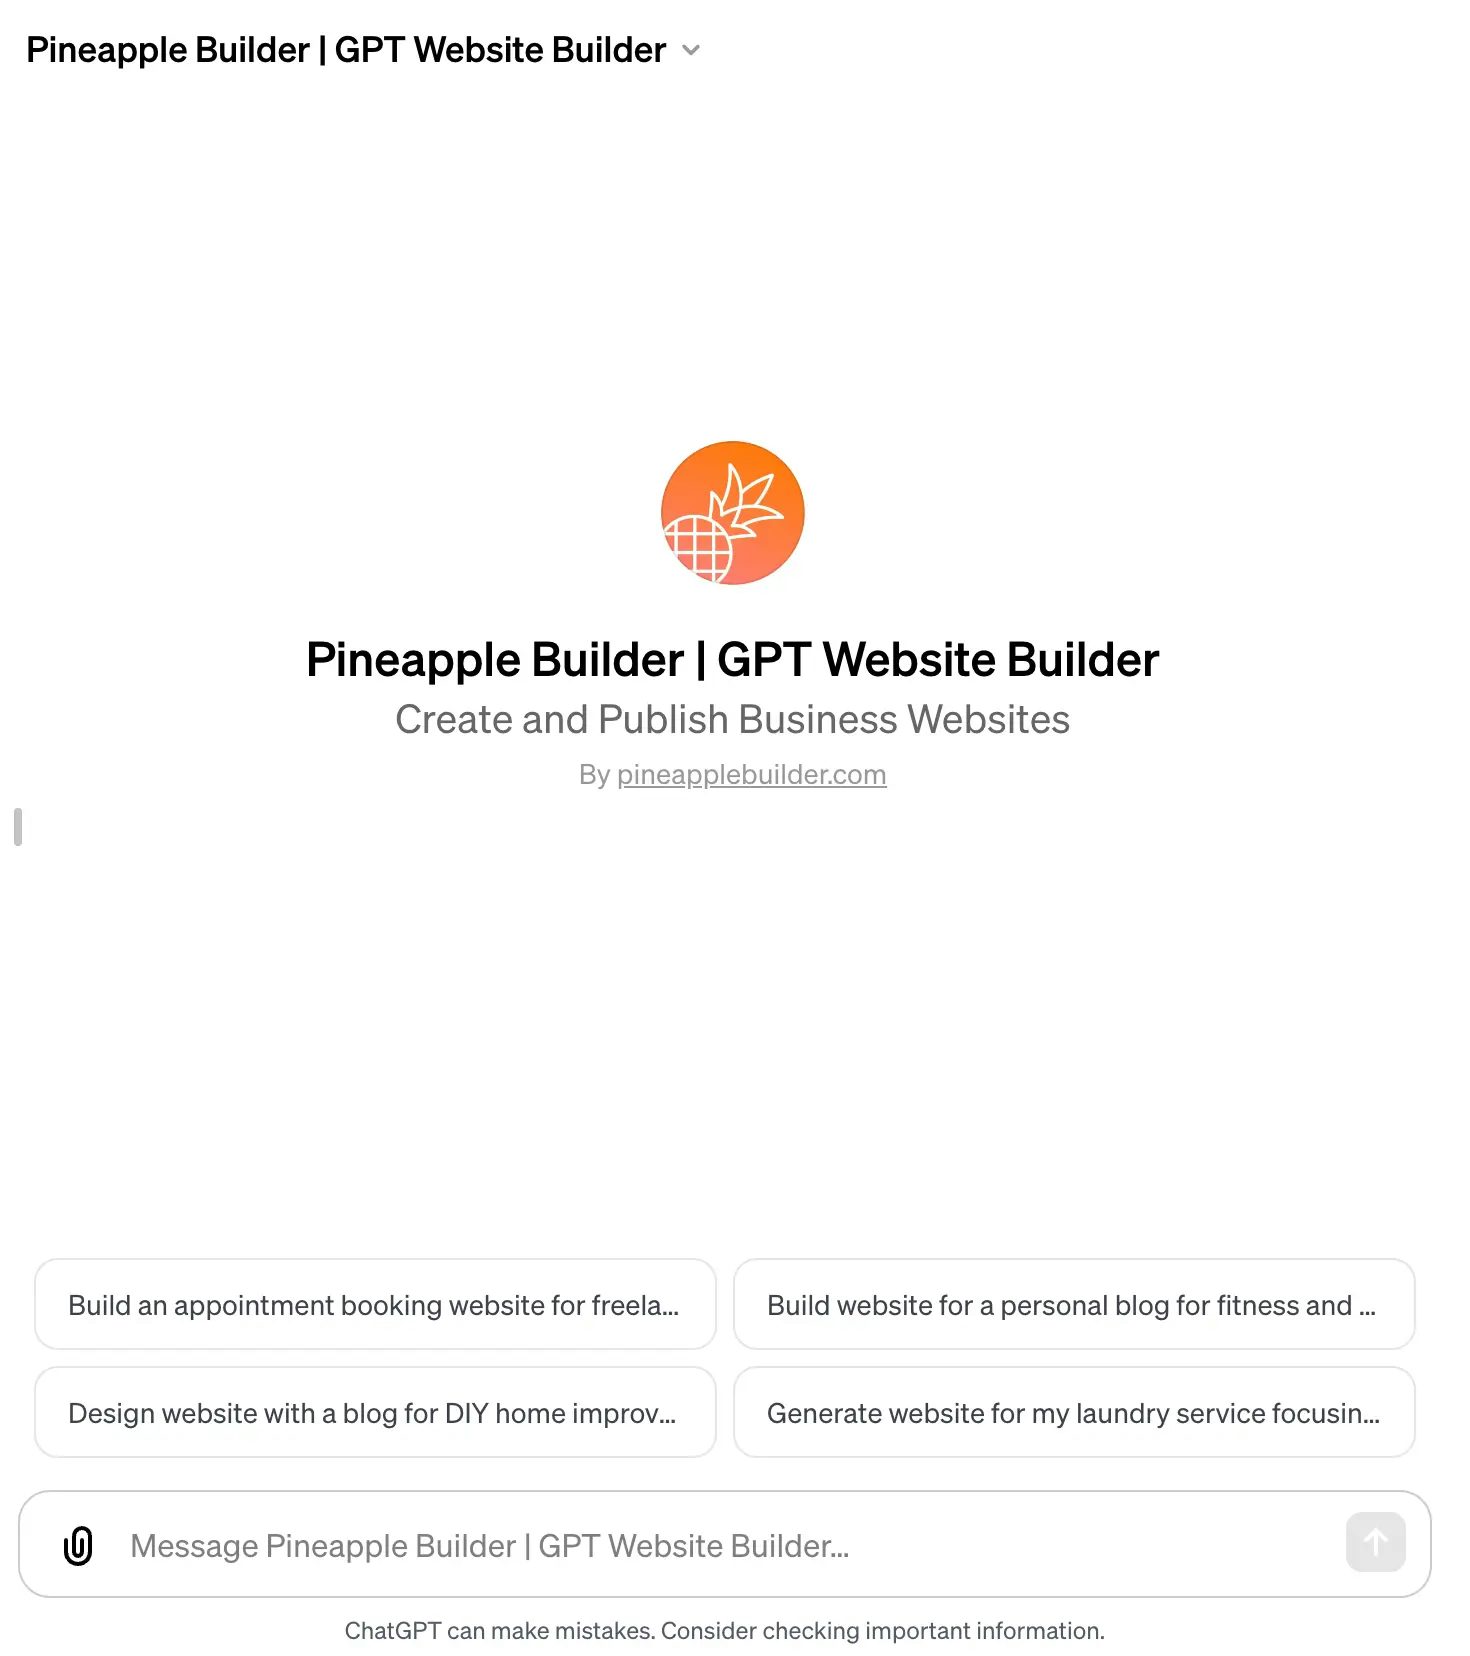 gpts pineapple_website_builder